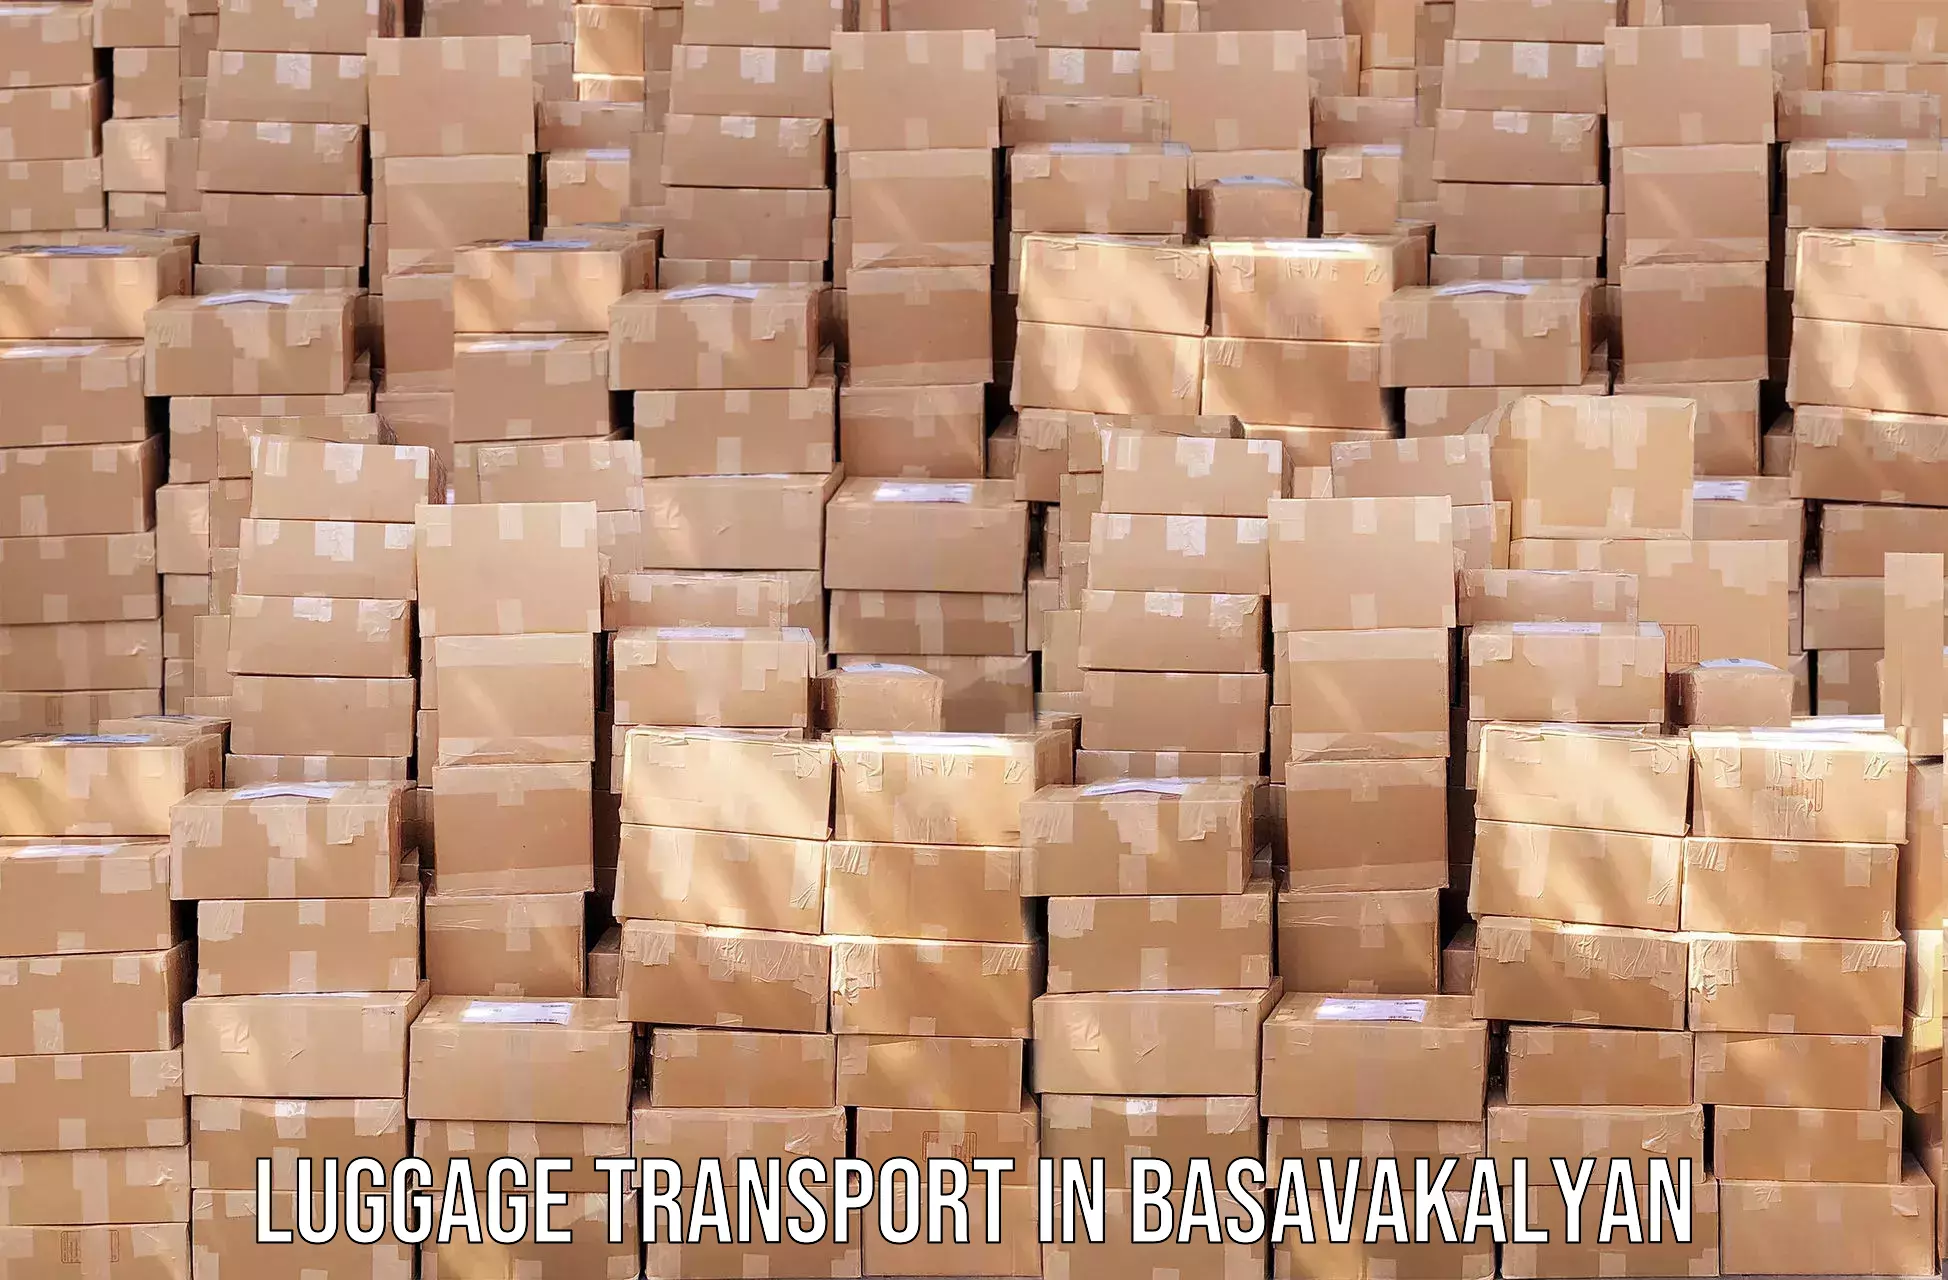 Luggage transport consulting in Basavakalyan